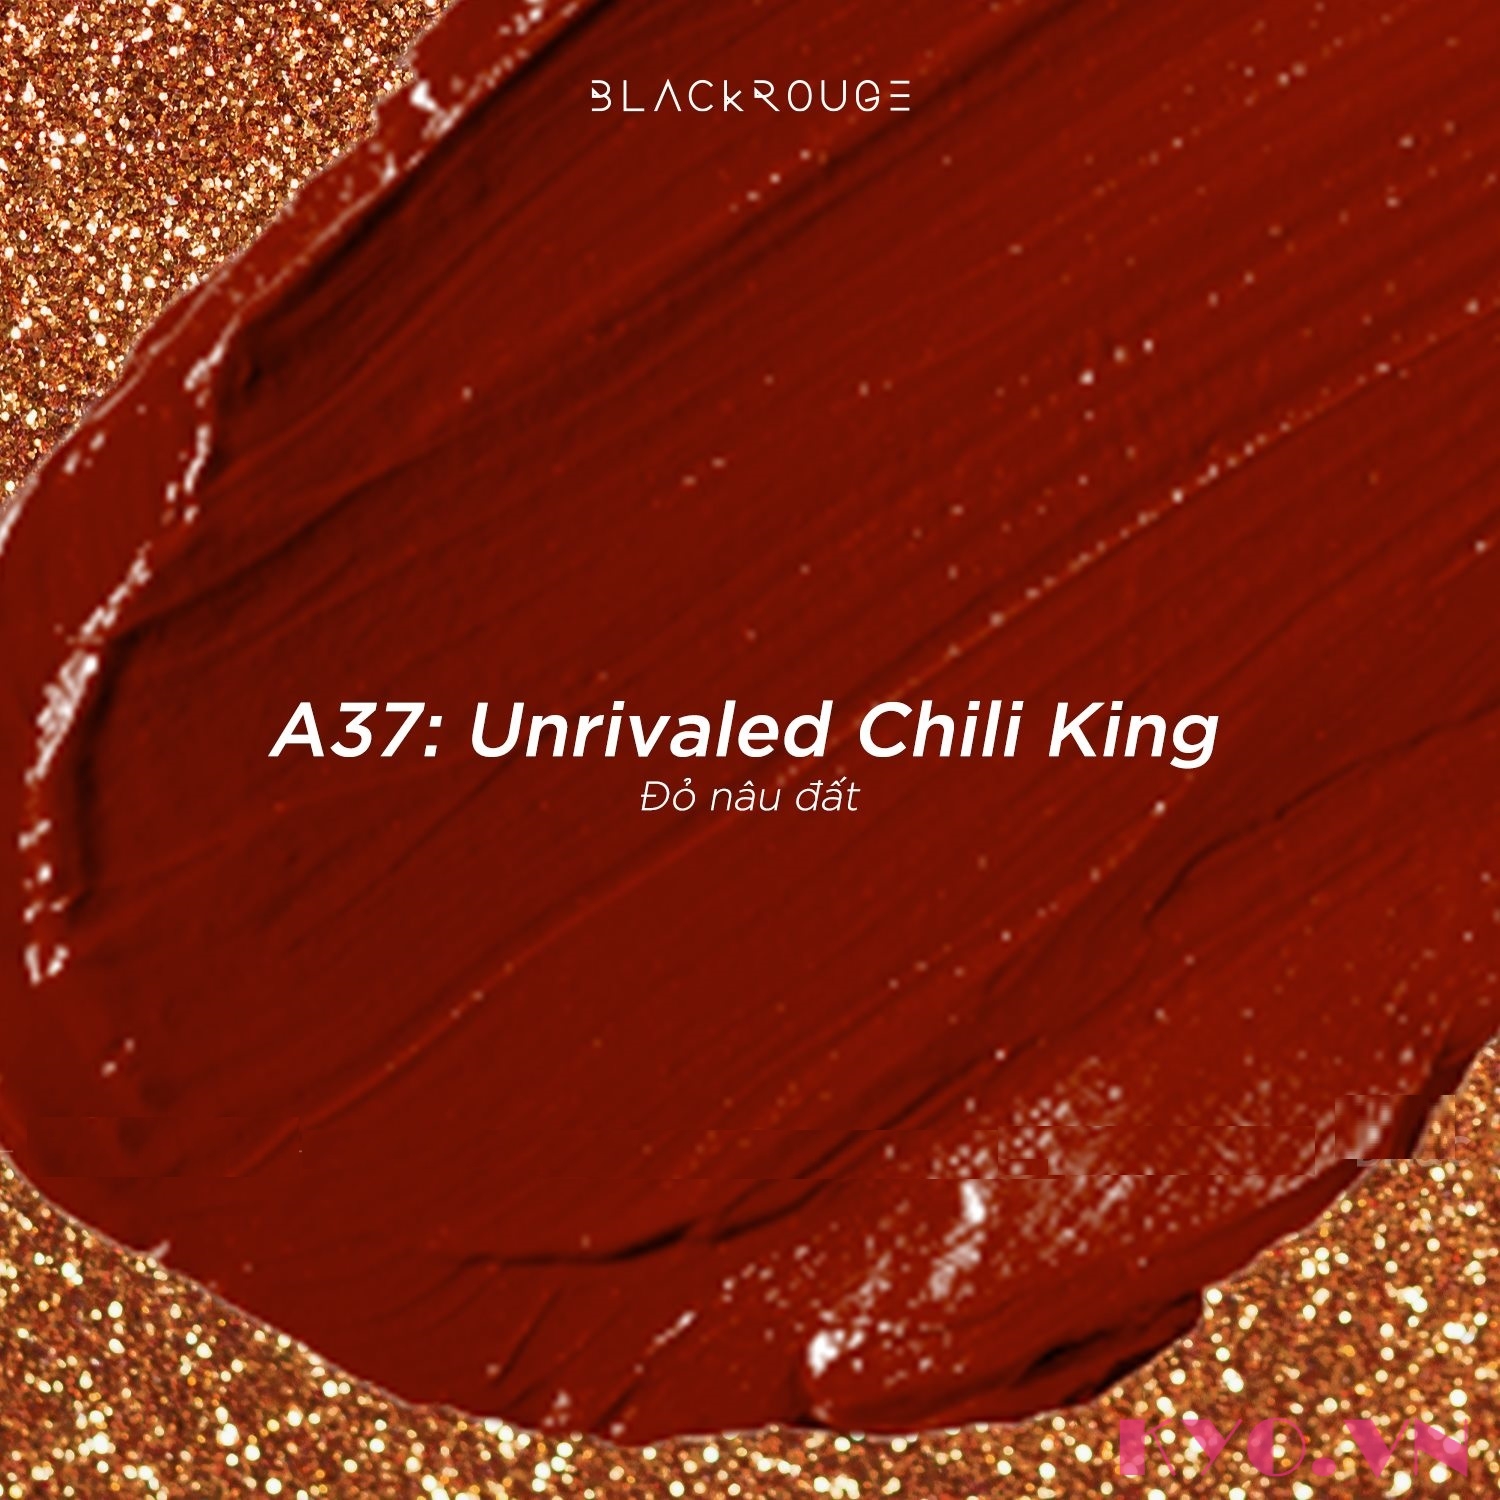 Son Black Rouge A37 - đây là một trong những thỏi son nổi bật nhất của năm. Với sắc đỏ tinh tế, kết hợp với hiệu ứng lấp lánh tự nhiên, son sẽ tôn lên vẻ đẹp của mọi cô nàng. Đừng bỏ lỡ cơ hội sở hữu sản phẩm này ngay hôm nay!